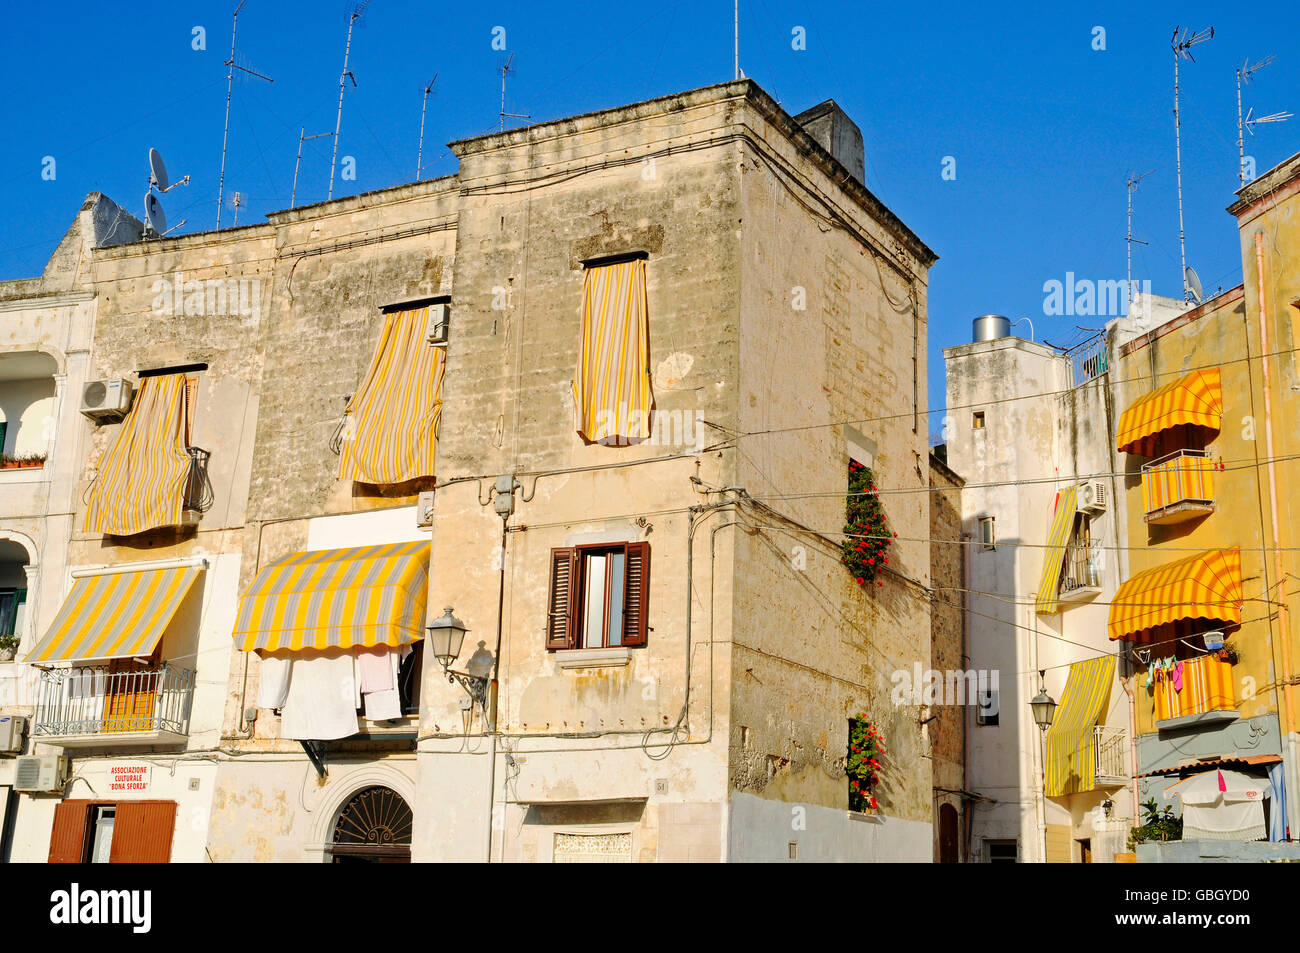 house facades, Bari Vecchia, historic city, Bari, Puglia, Italy Stock Photo